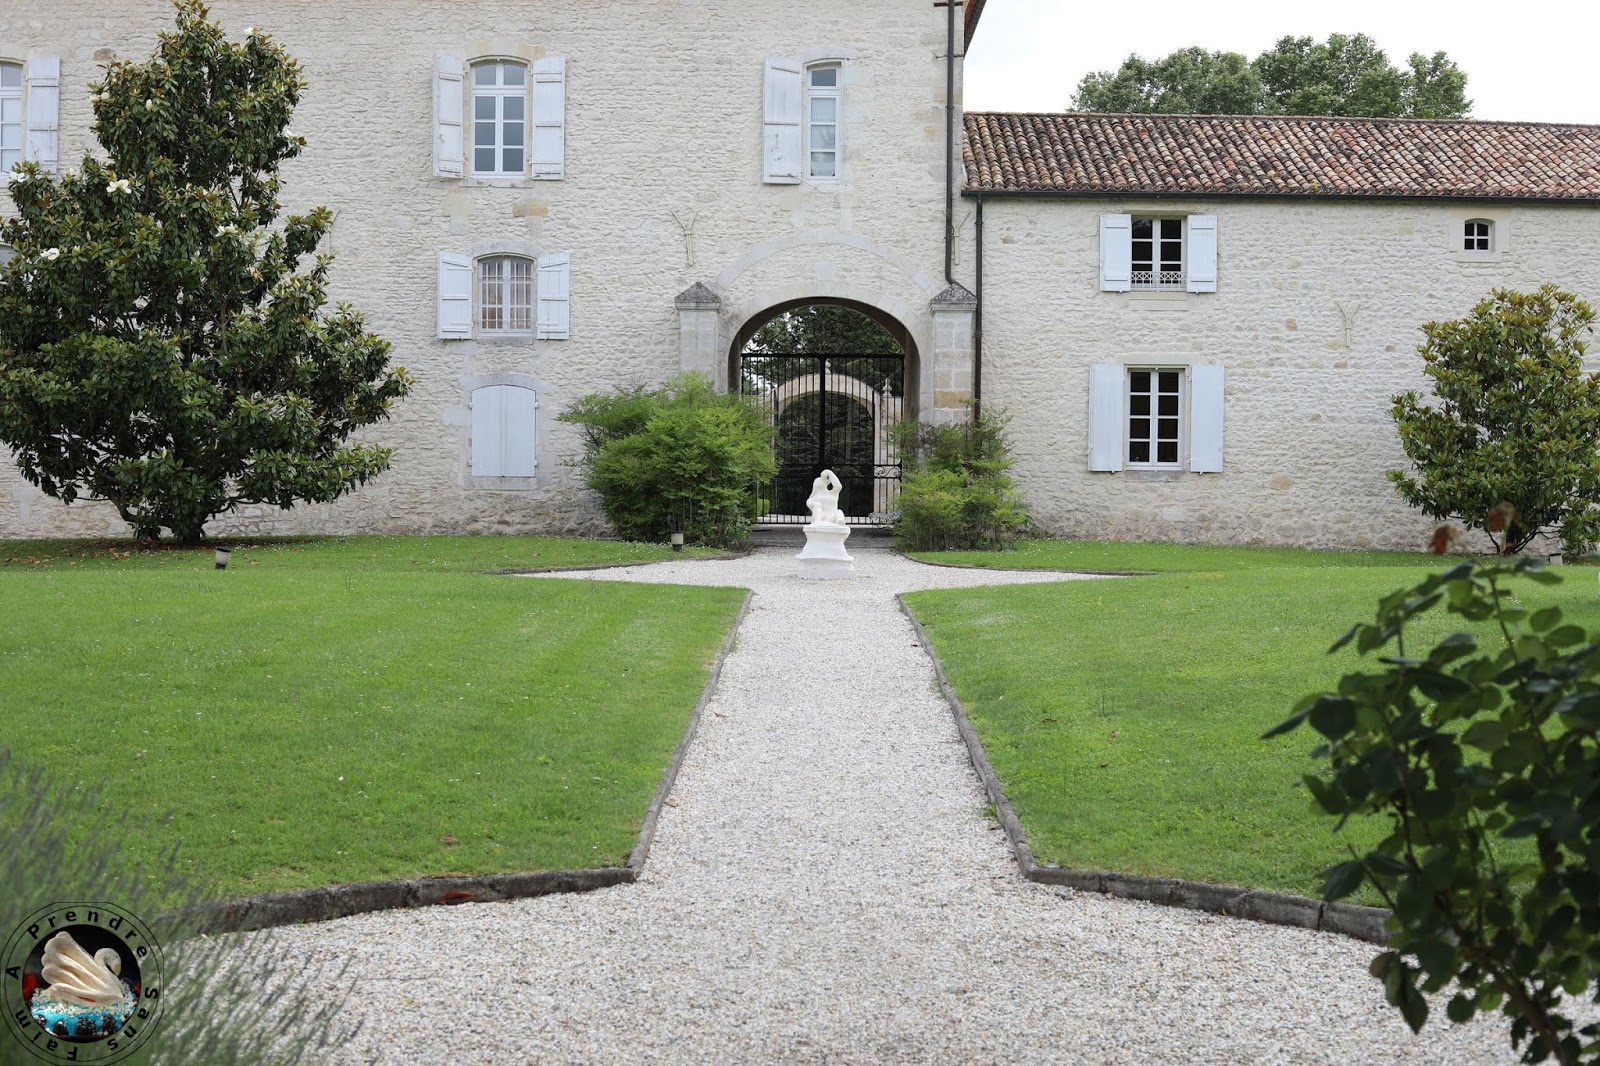 Visite et dégustations au Château Castera